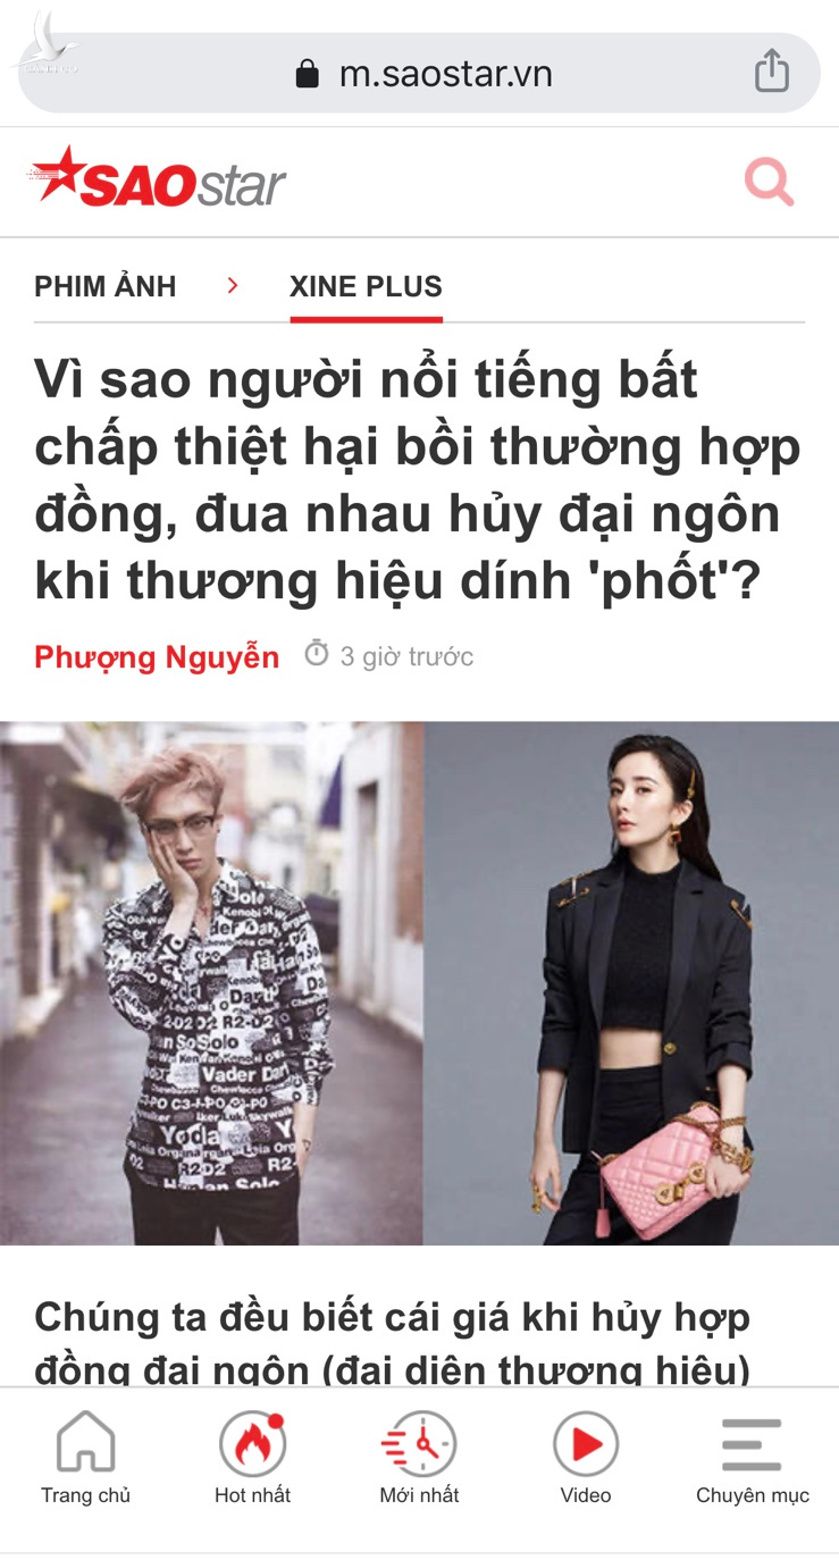 bài viết "Vì sao người nổi tiếng bất chấp thiệt hại bồi thường hợp đồng, đua nhau hủy đại ngôn khi thương hiệu dính 'phốt'?" của tác giả Phượng Nguyễn 